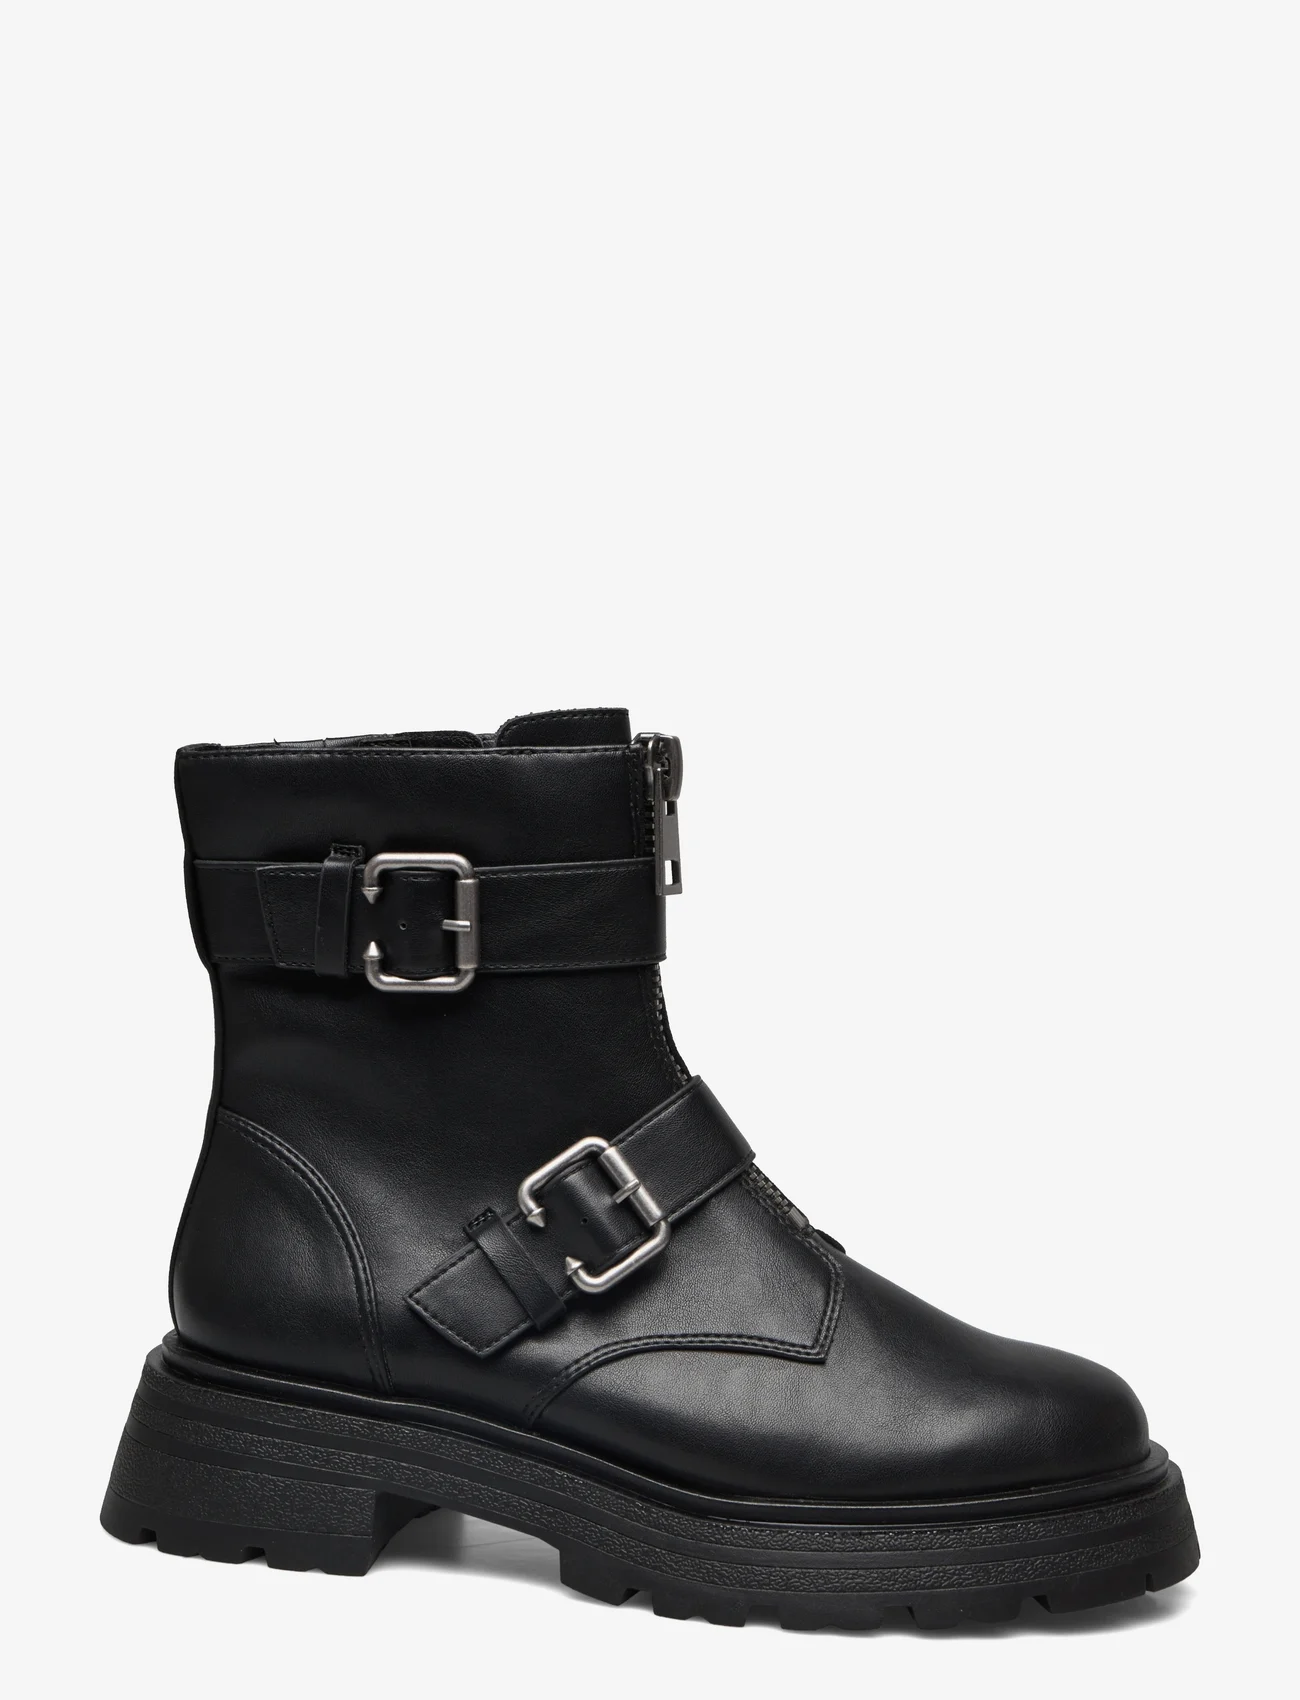 Tamaris - Women Boots - lygiapadžiai aulinukai iki kulkšnių - black matt - 1